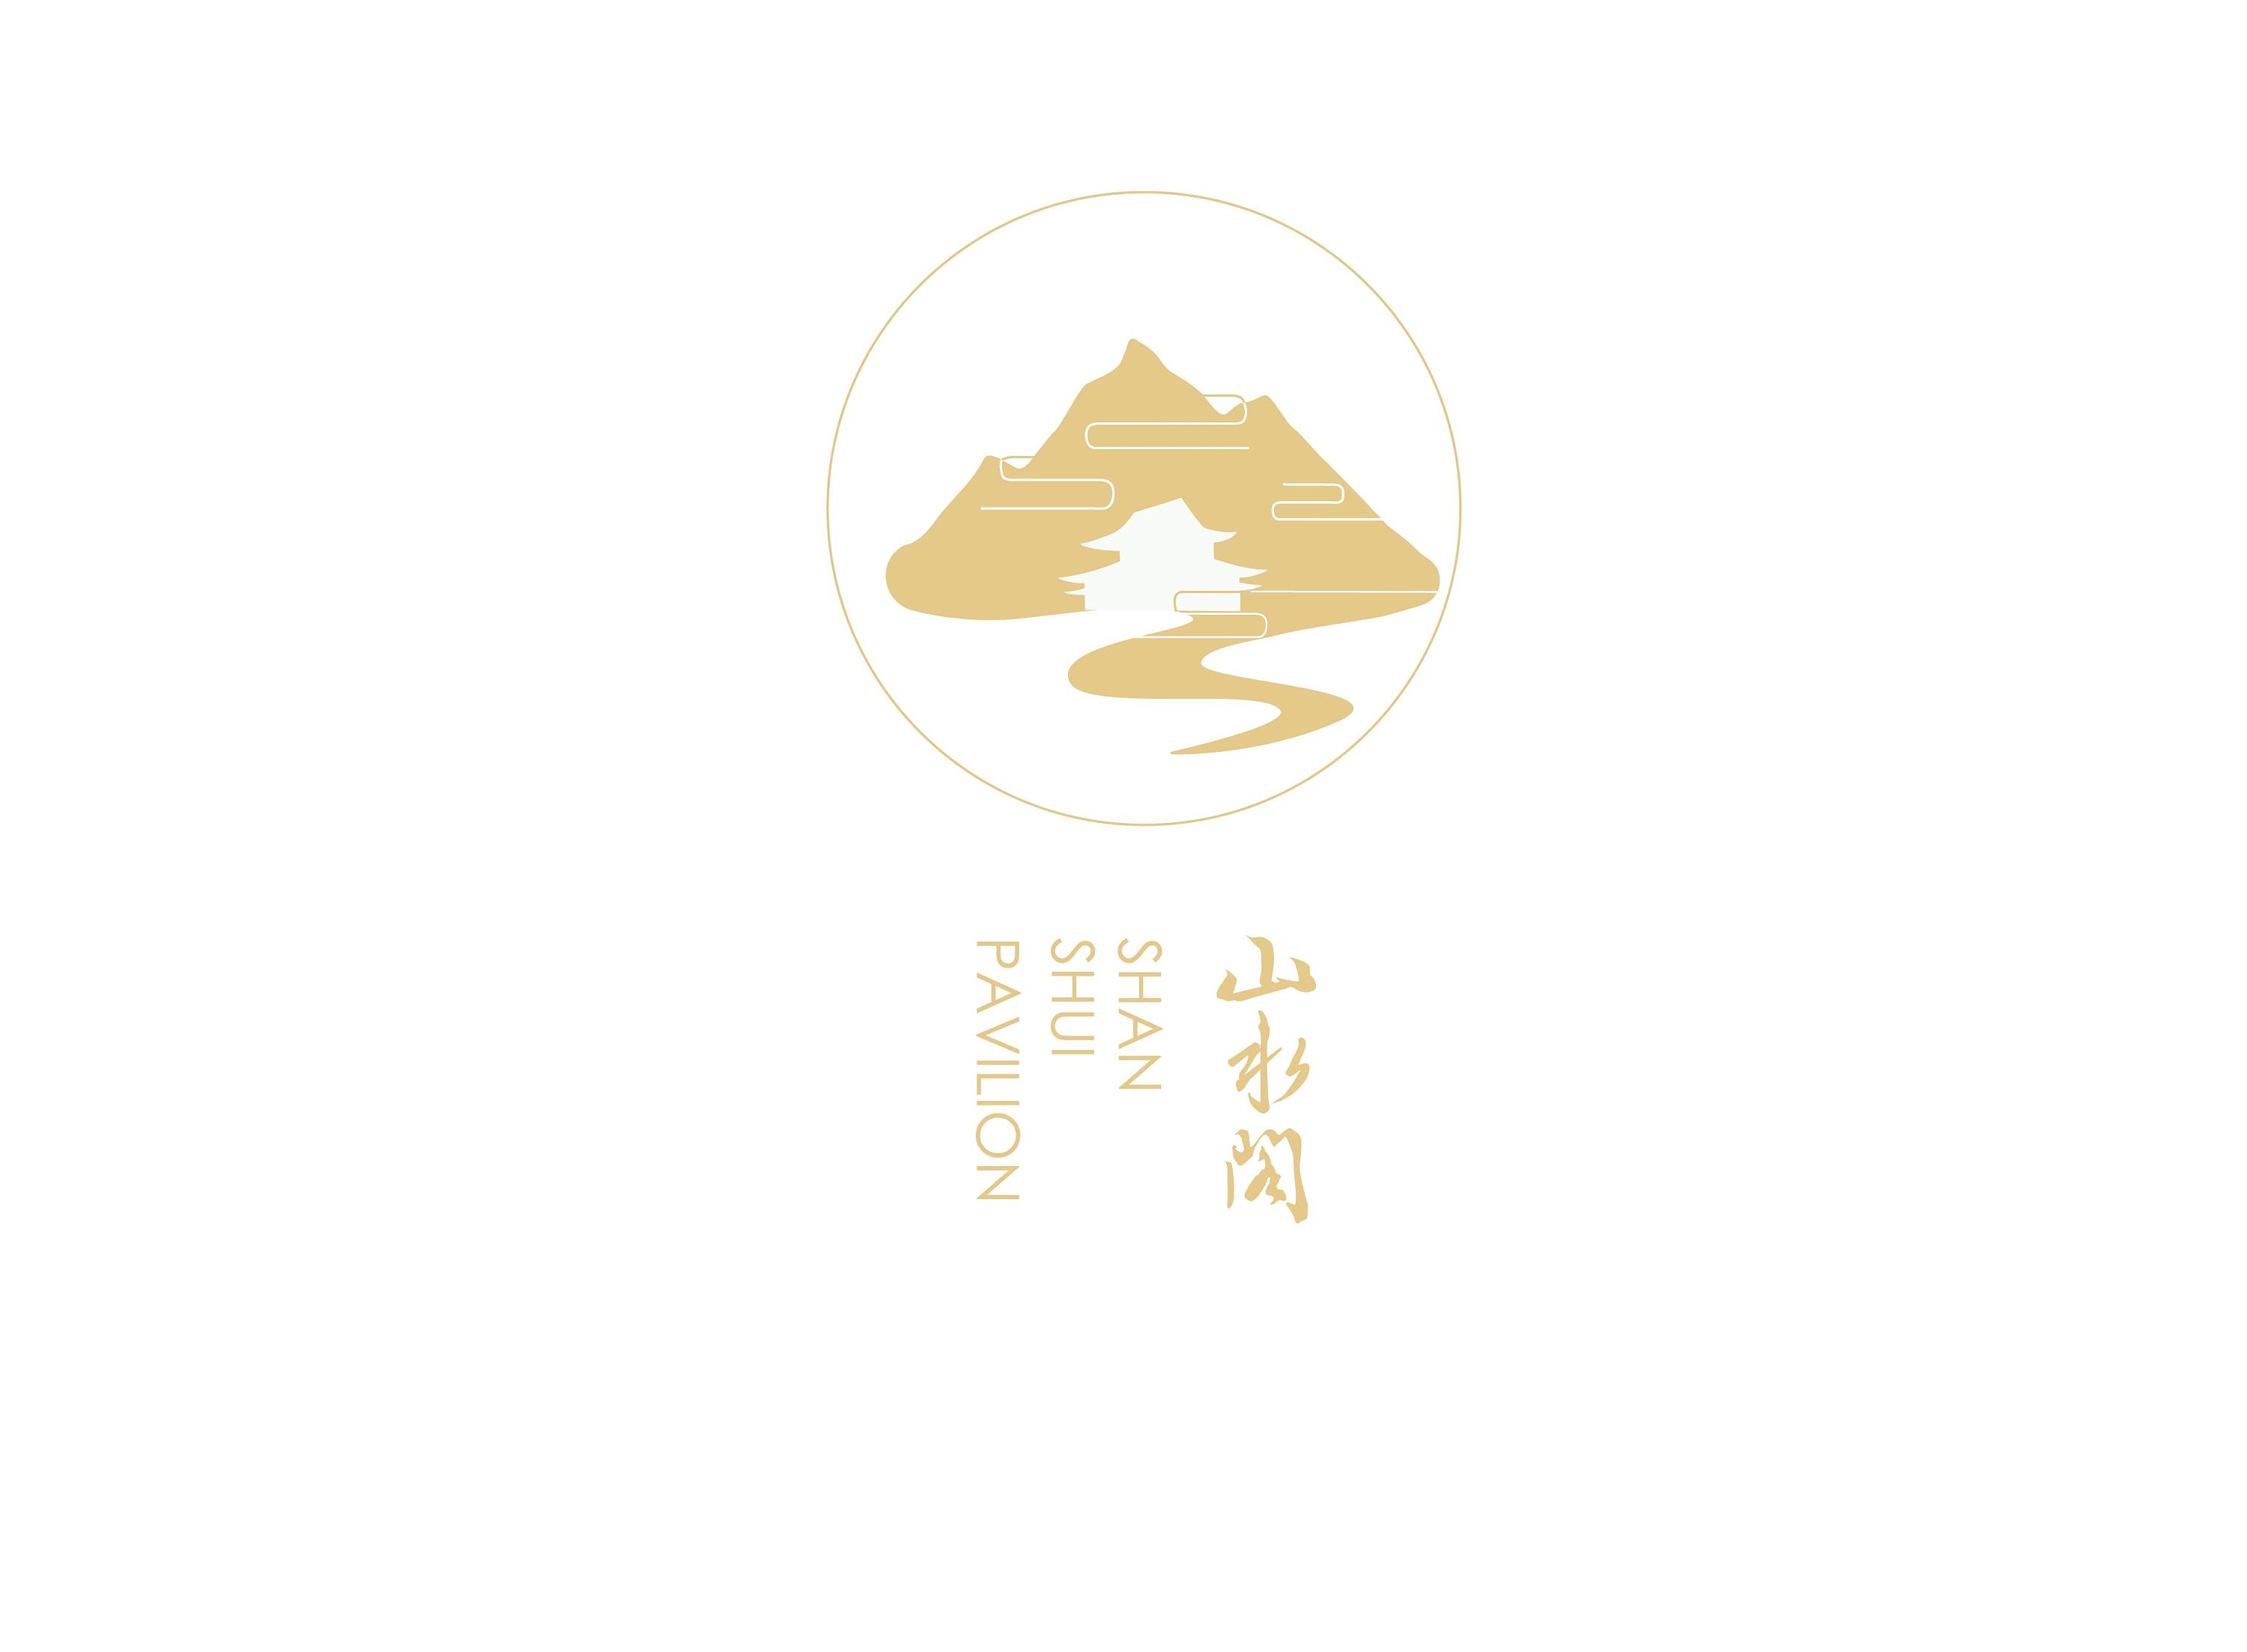 民宿logo设计 图片欣赏图片